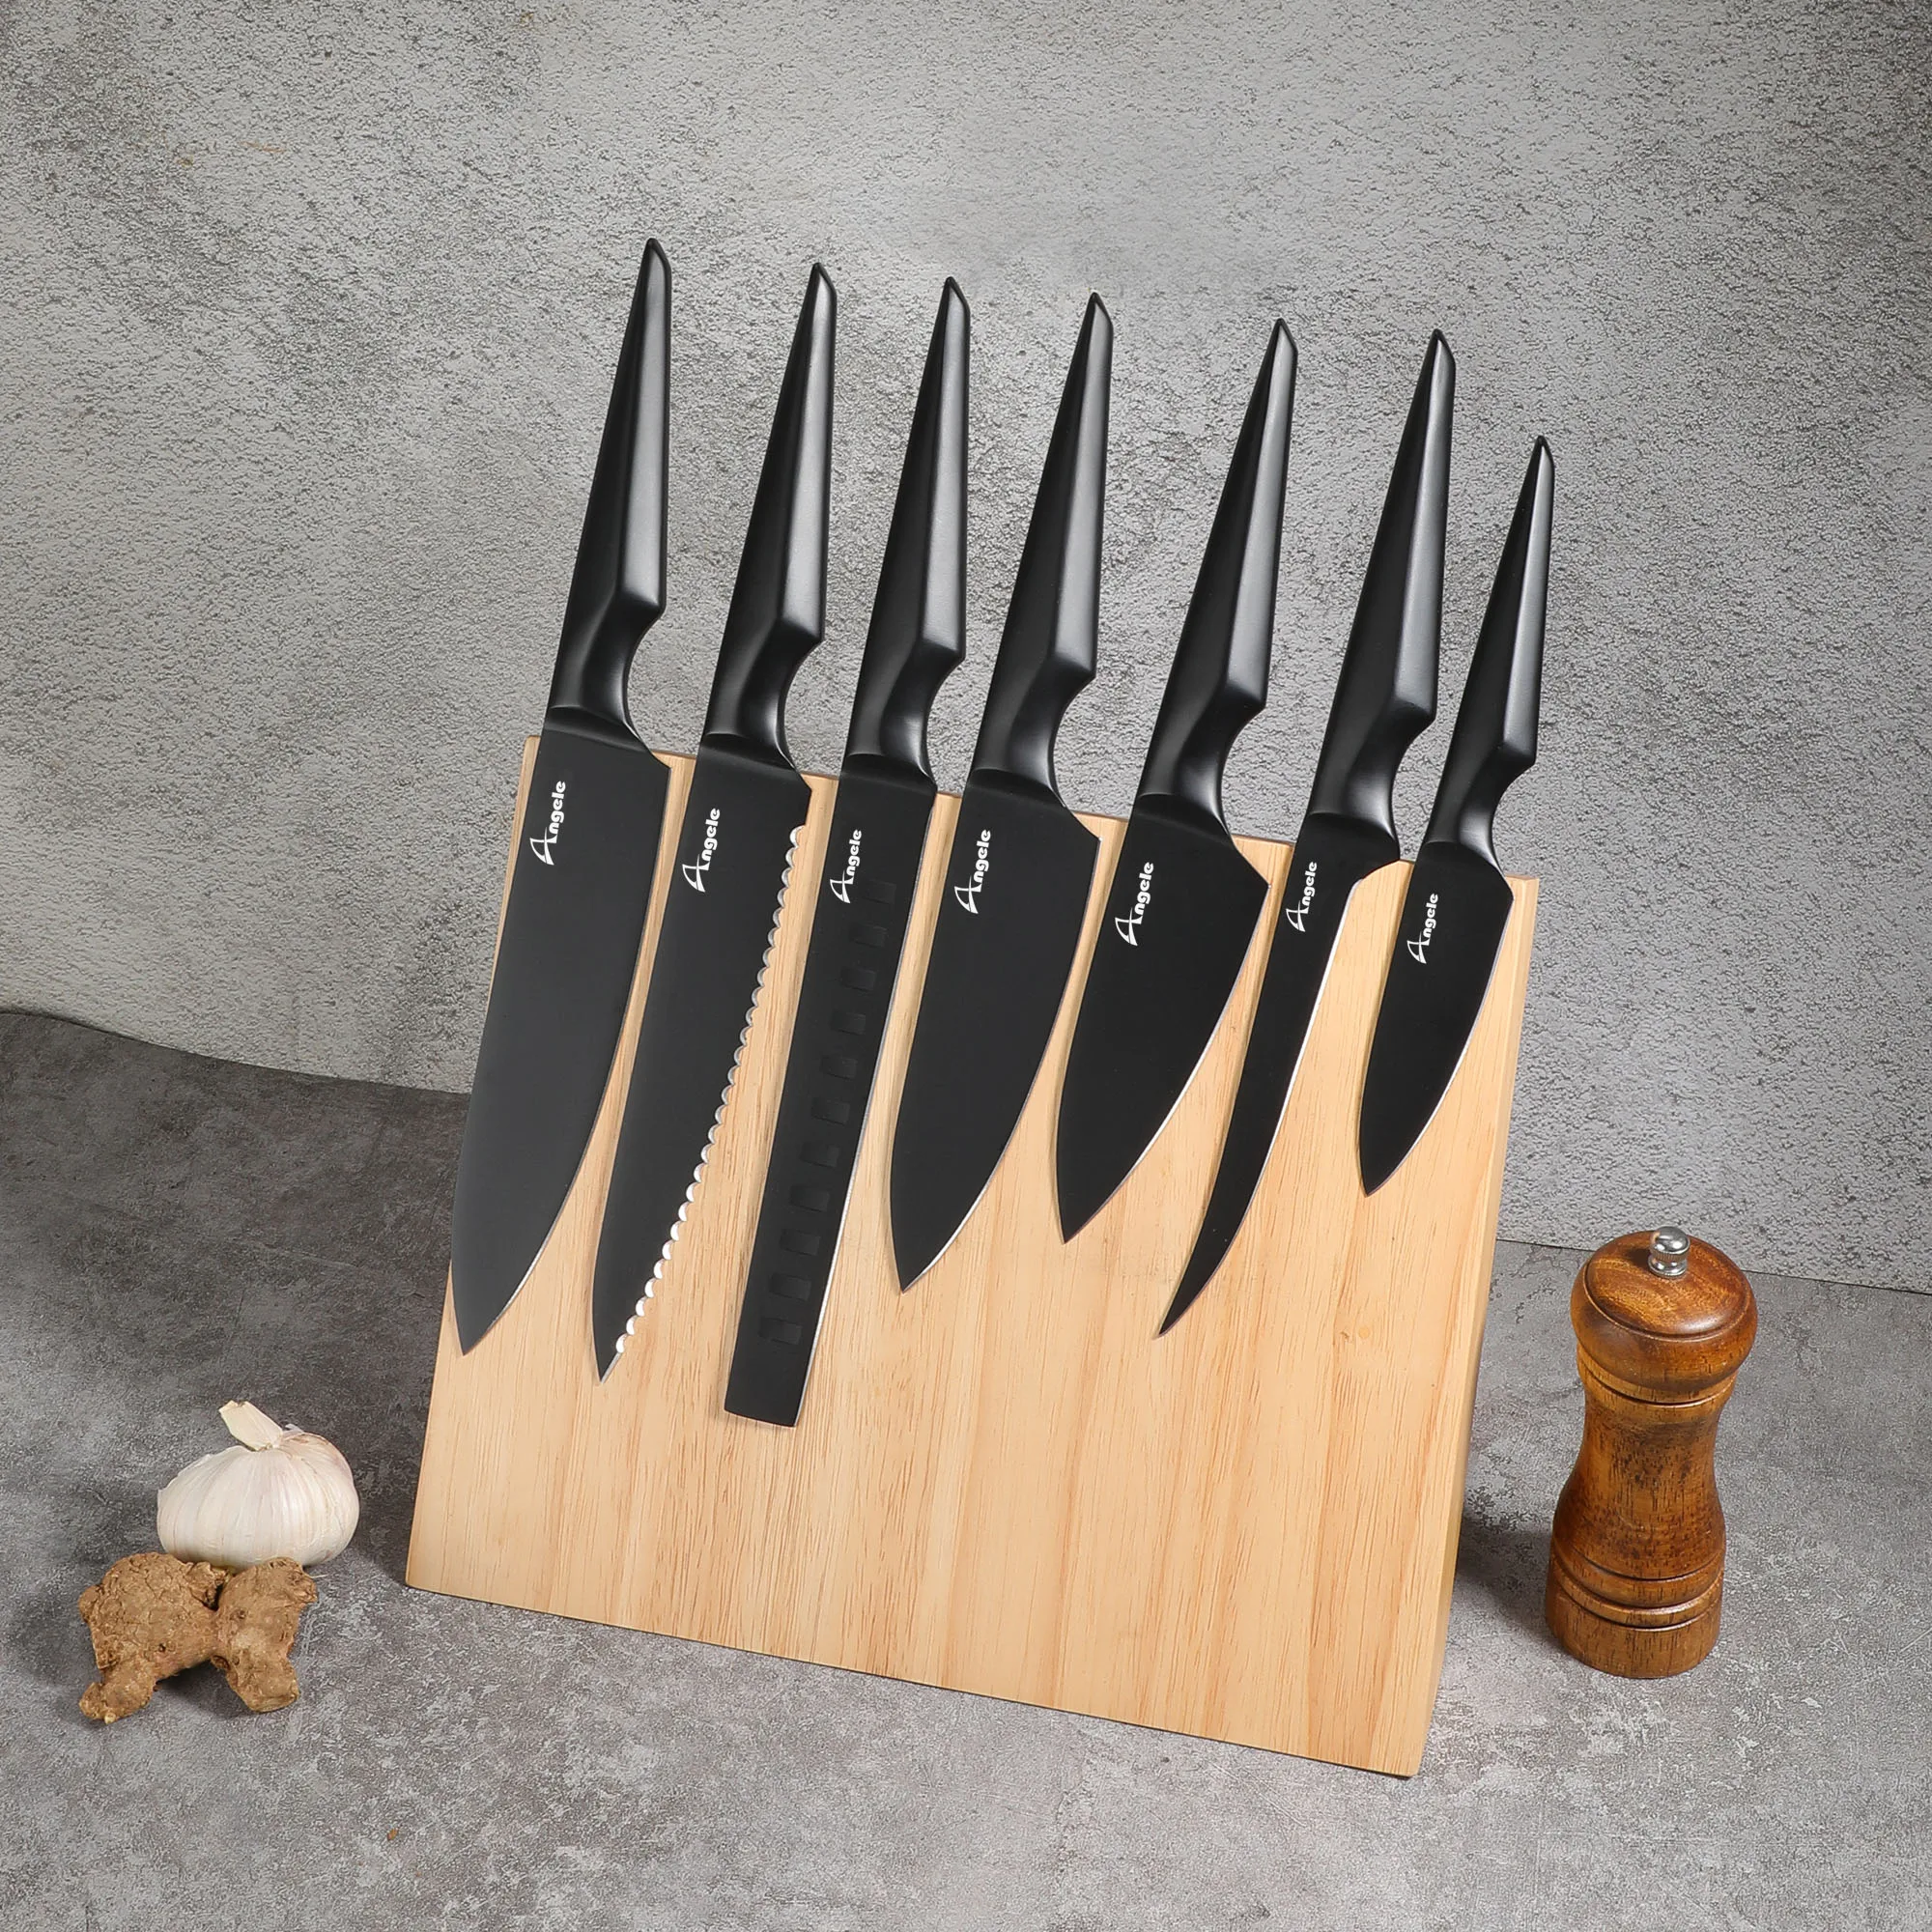 Набор кухонных ножей из нержавеющей стали в черном цвете, набор ножей с блоком